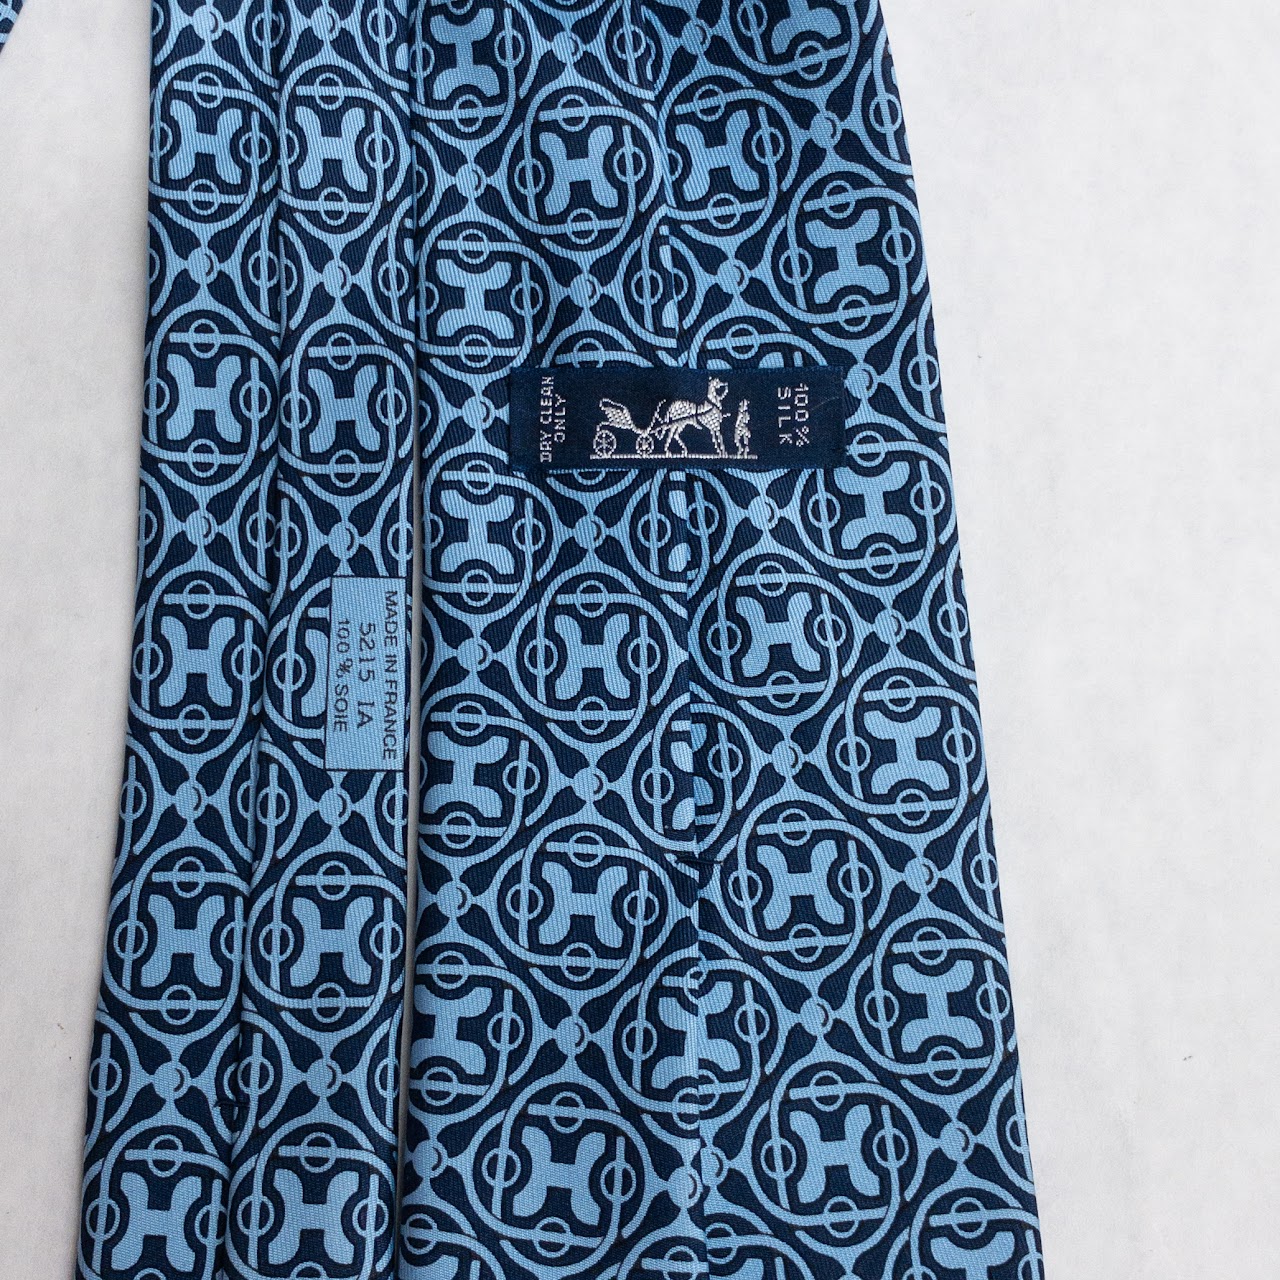 Hermès 'H' Pattern Tie